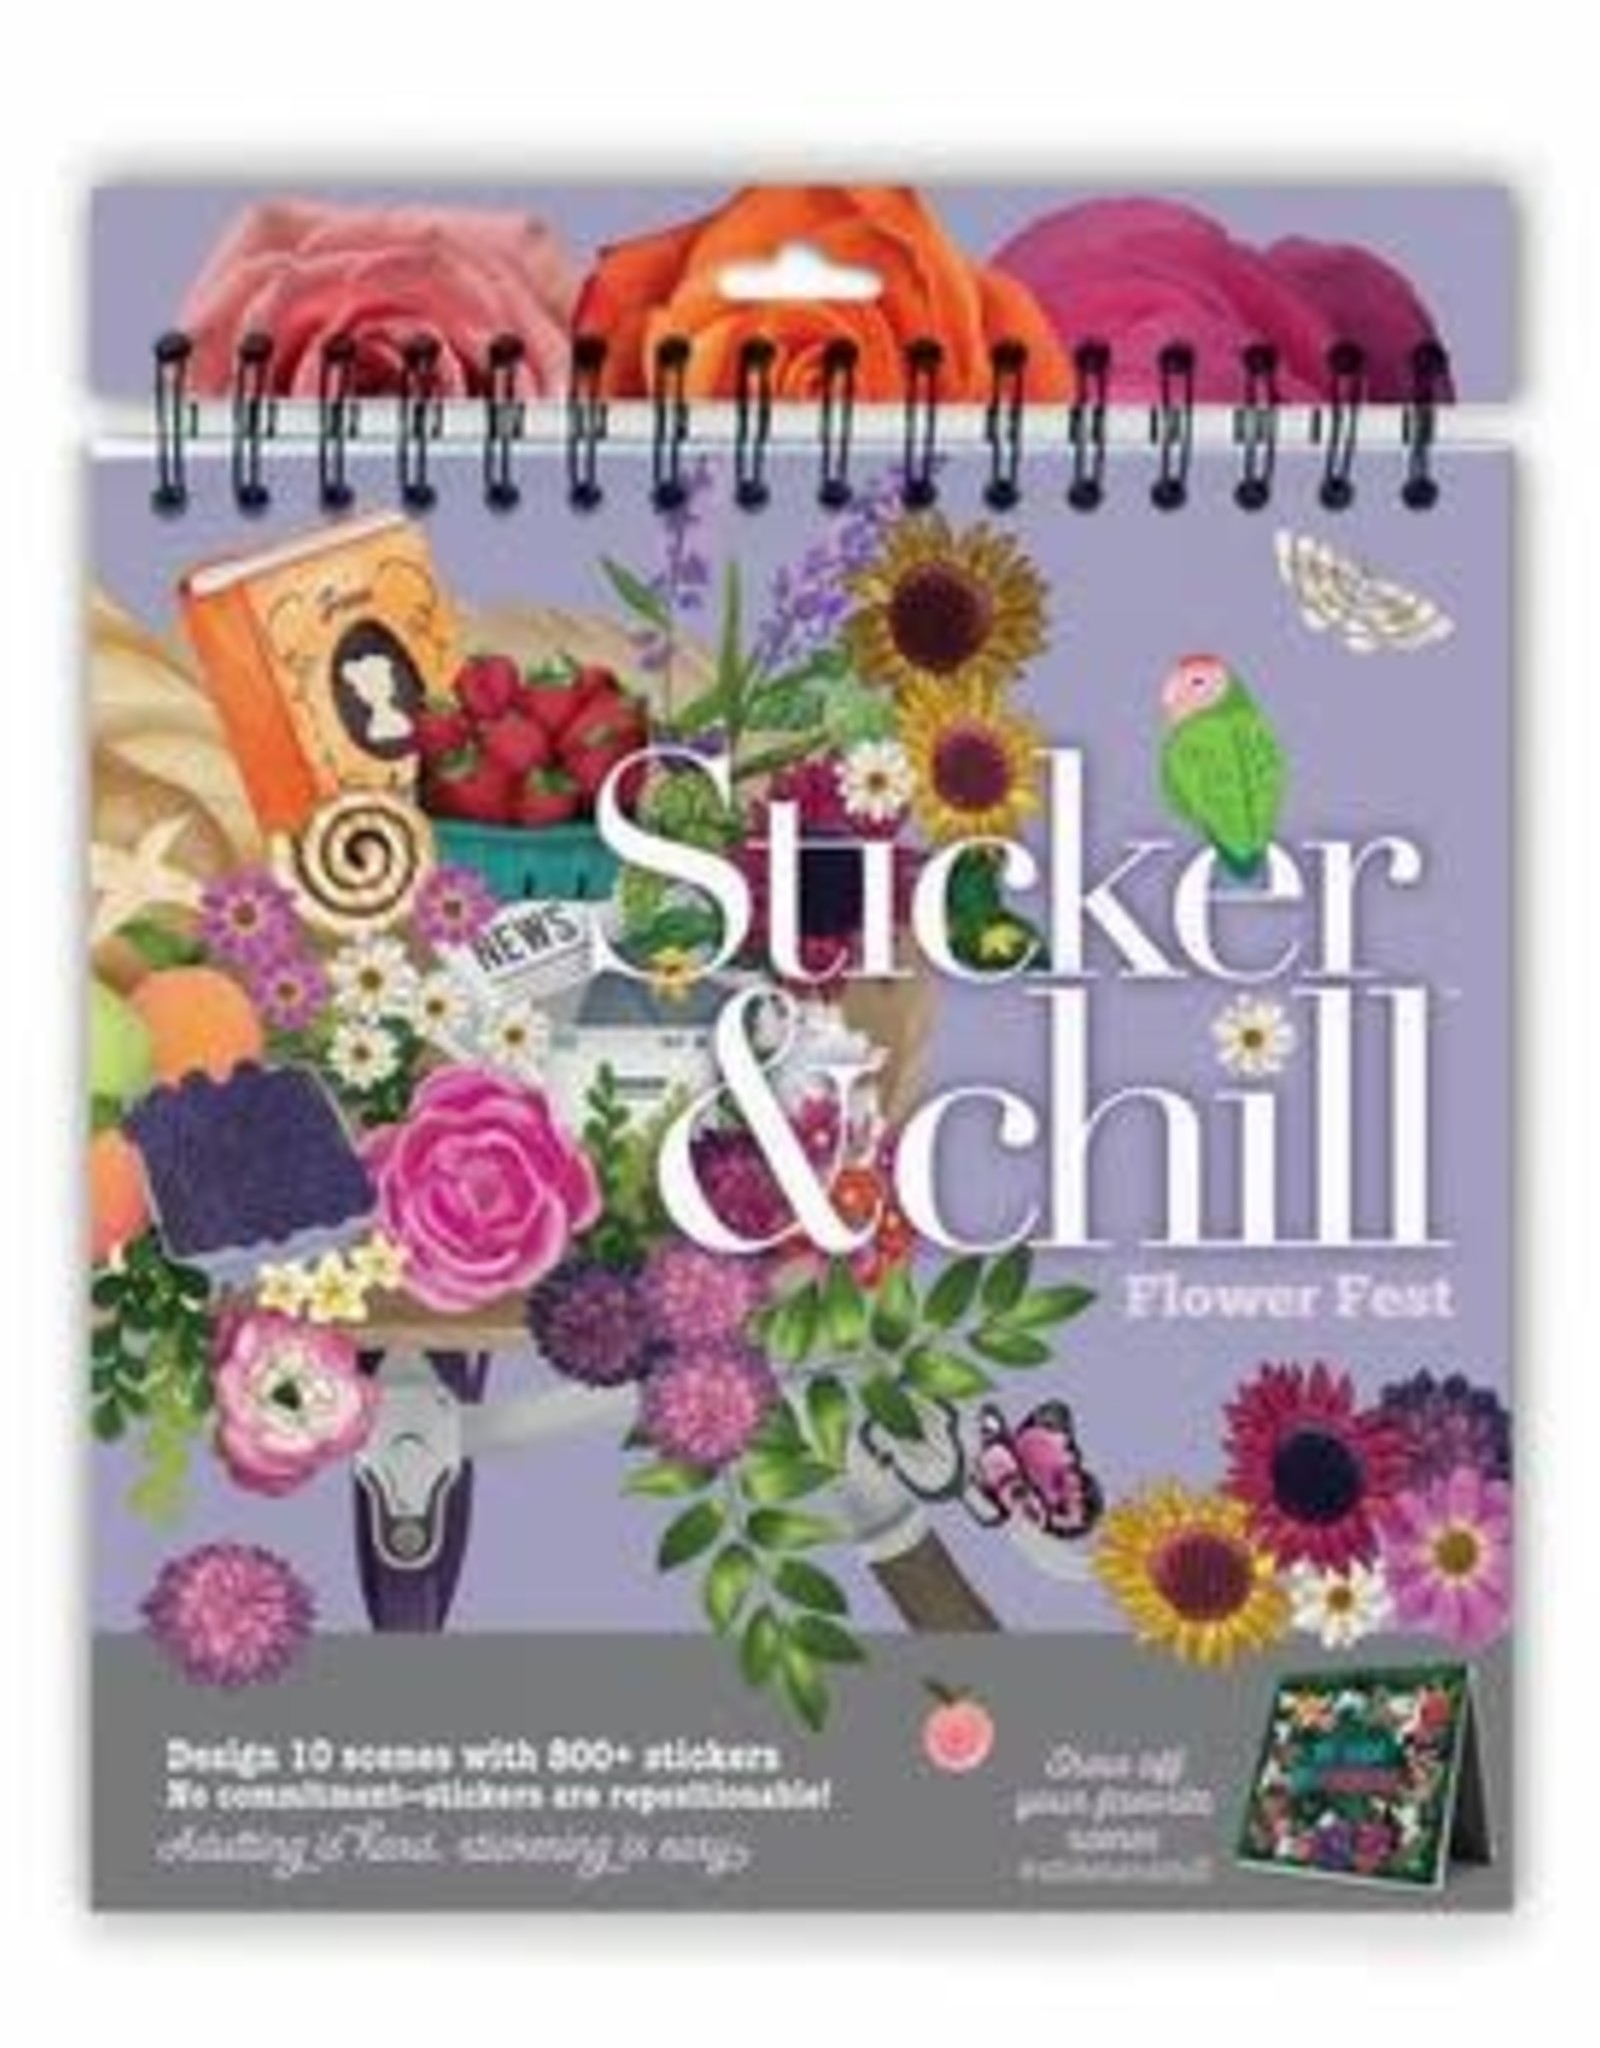 Outset media Sticker & Chill Flower Fest